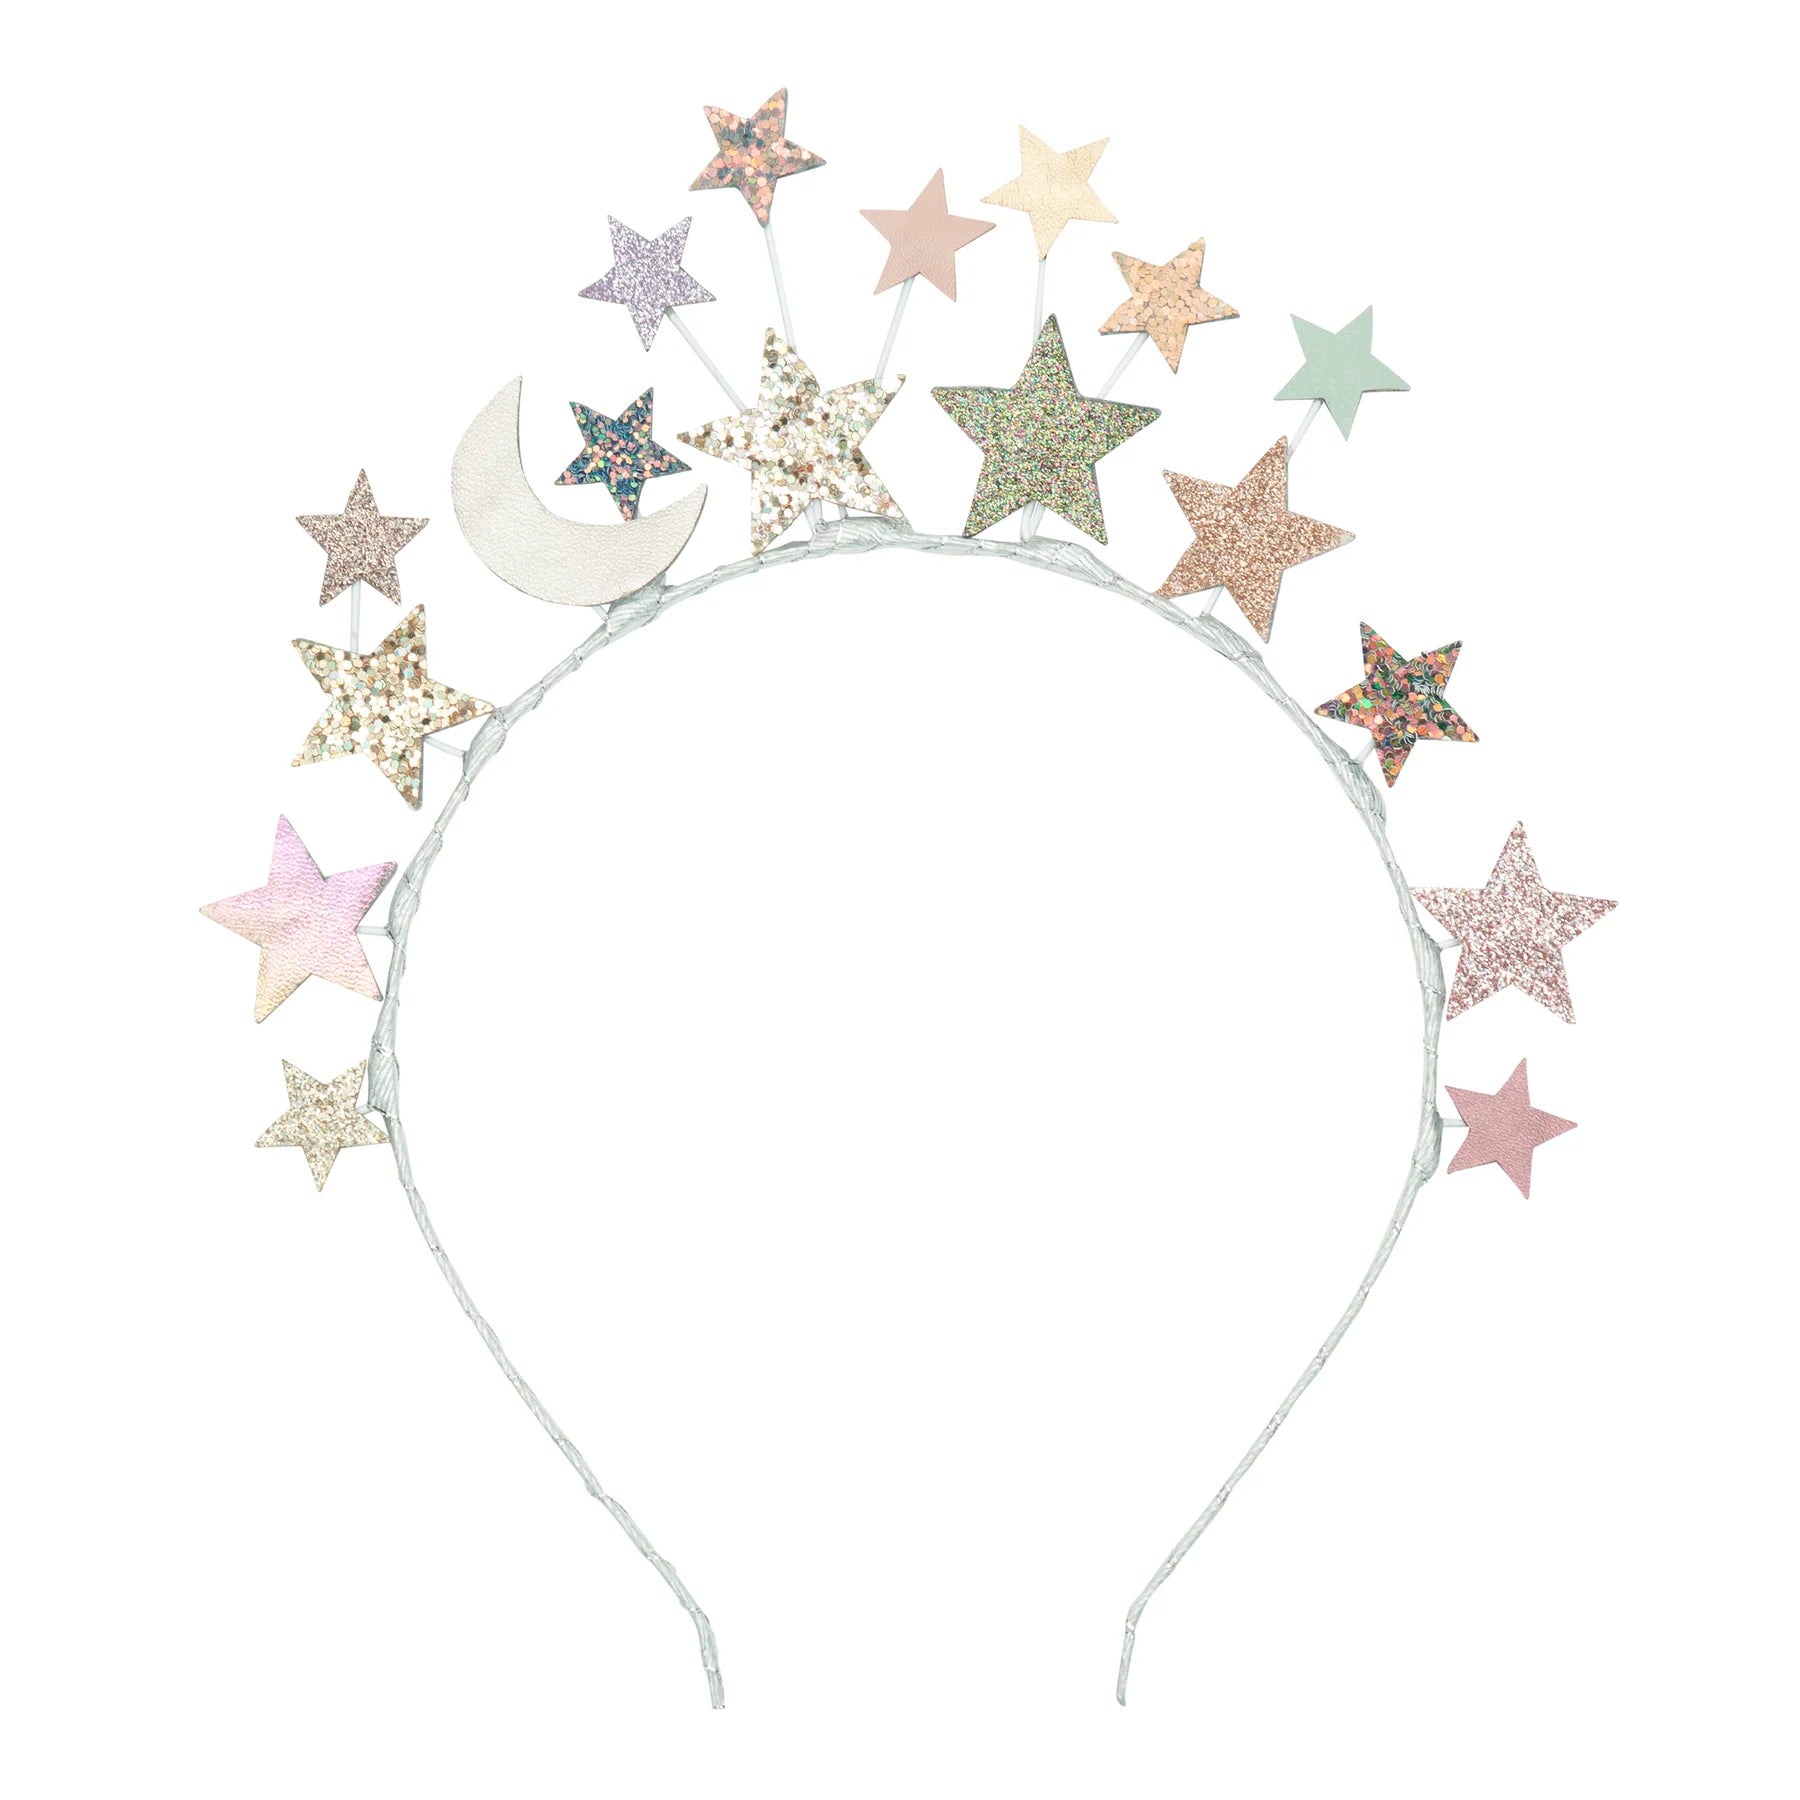 Magic Star Headdress - Fairytale